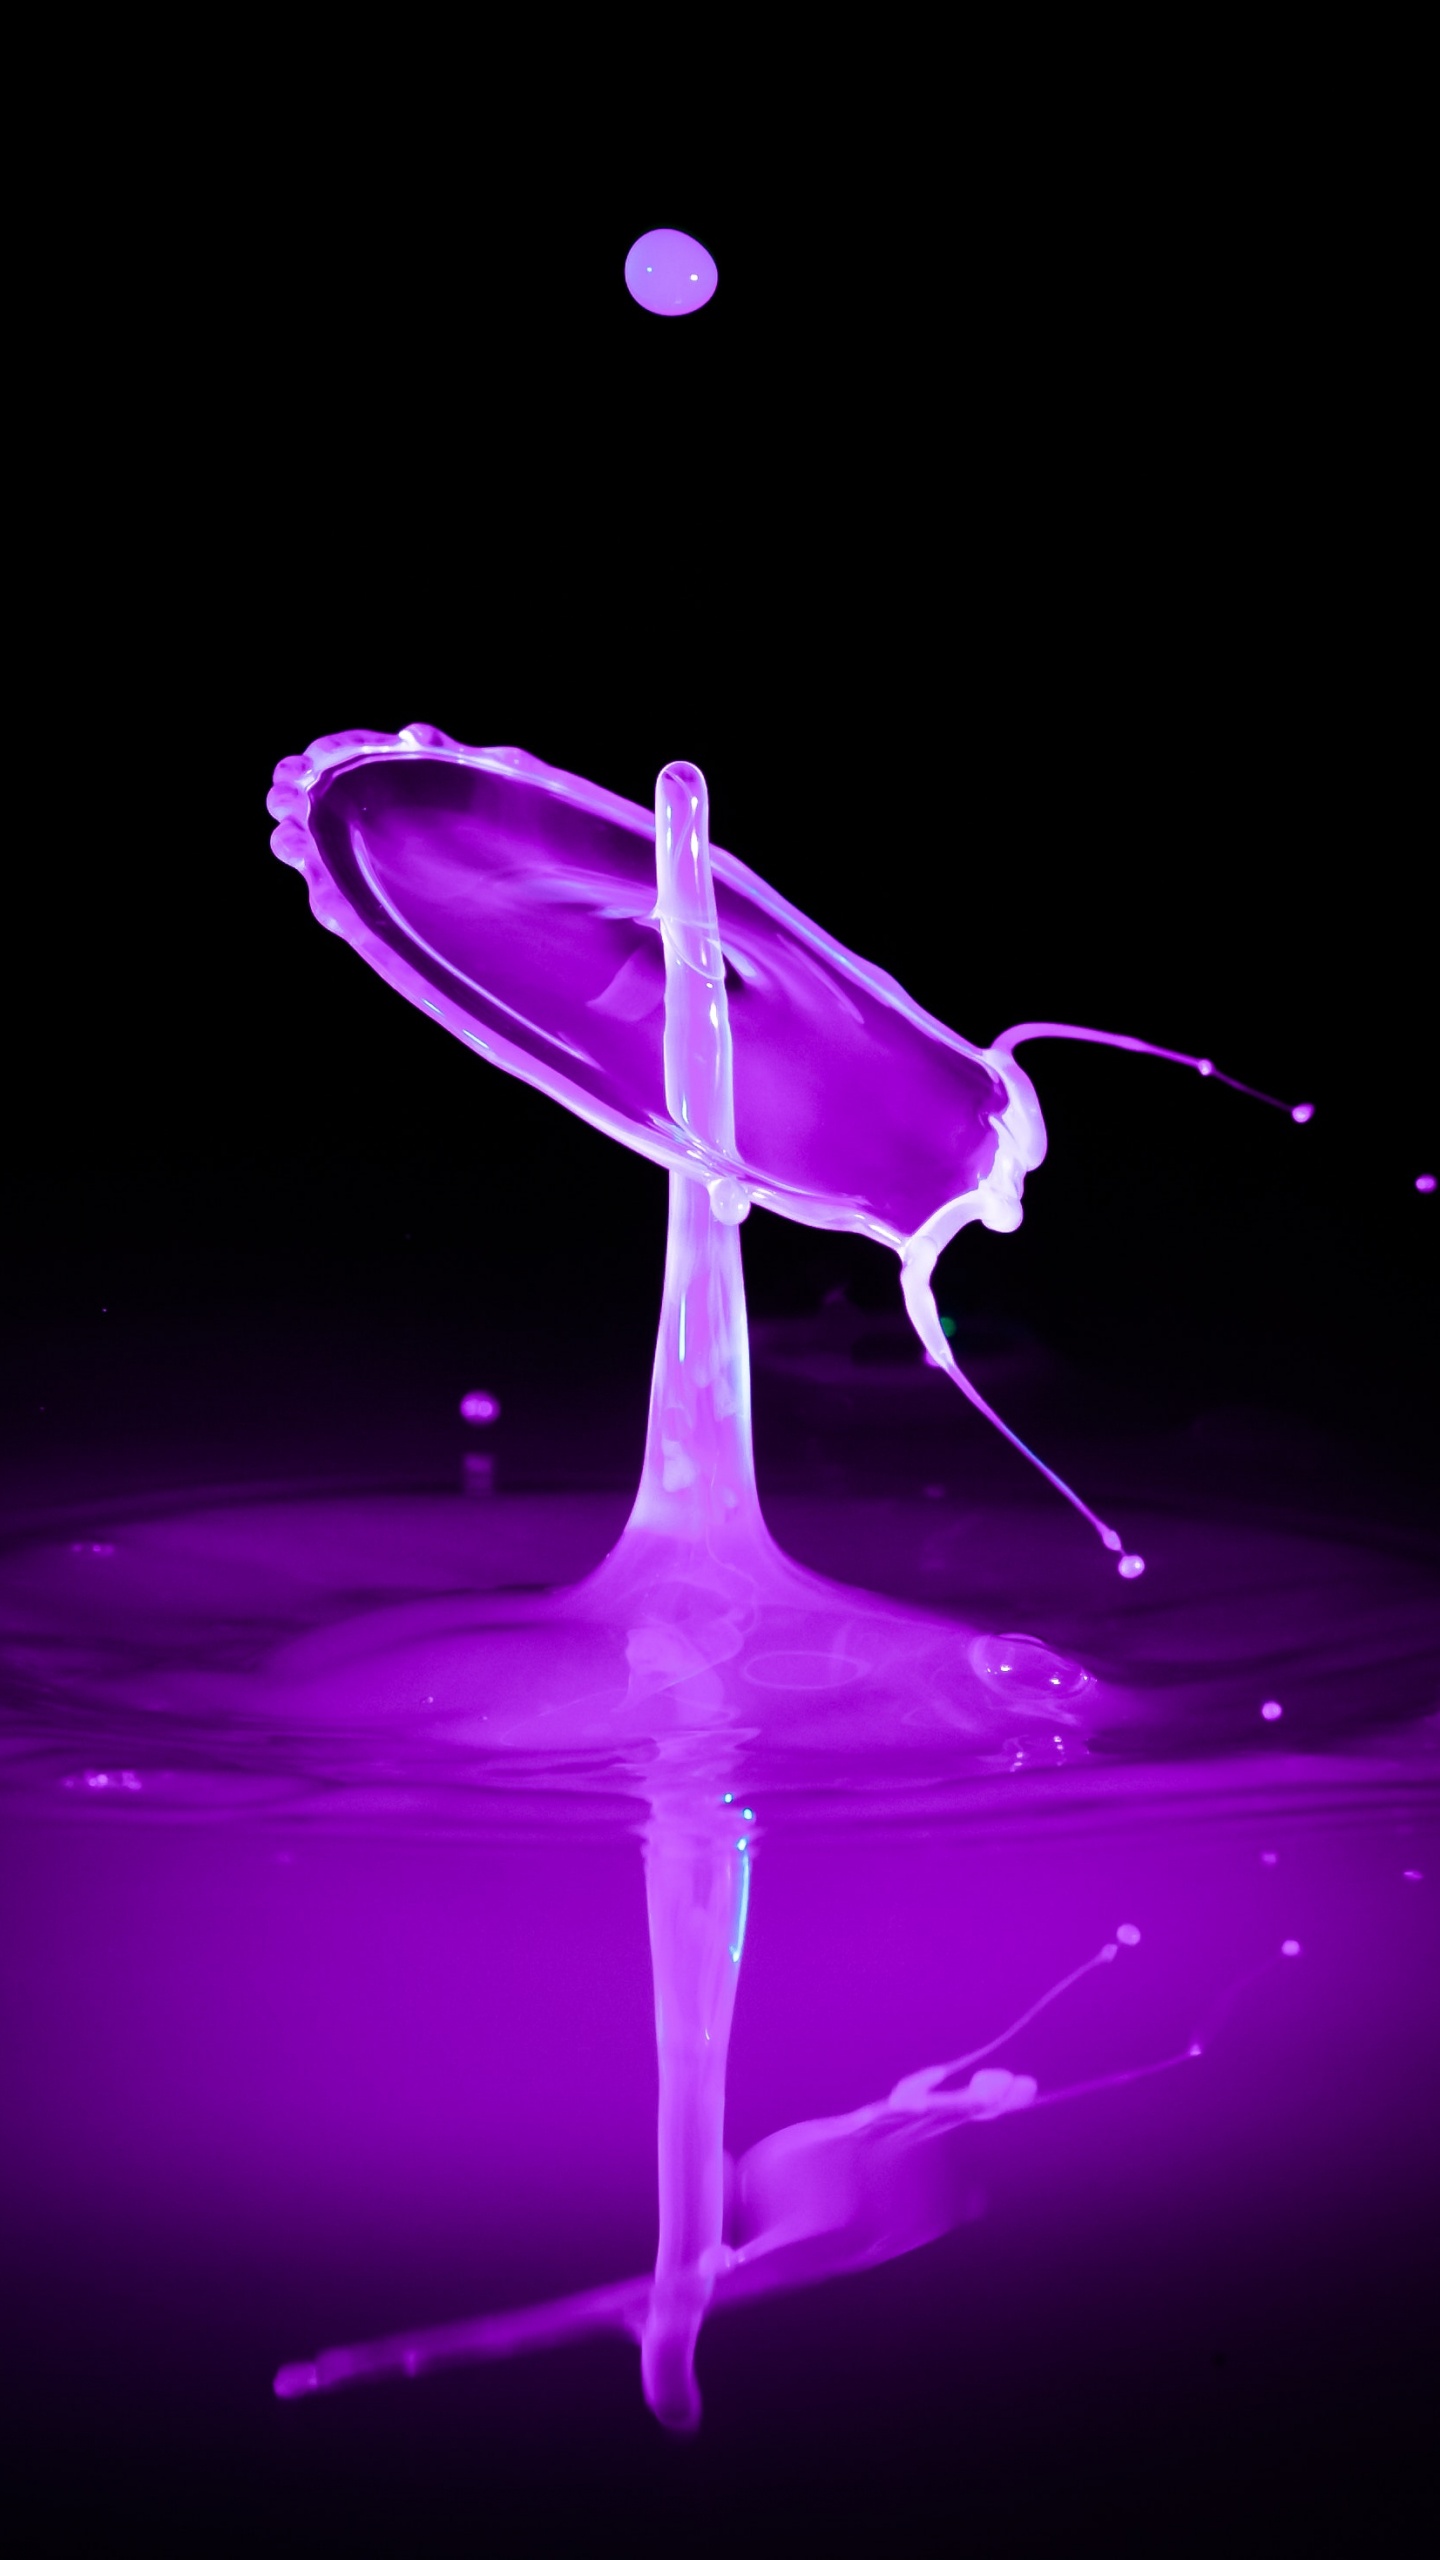 运动的图形, 紫色的, 紫罗兰色, 液体, 流体 壁纸 1440x2560 允许